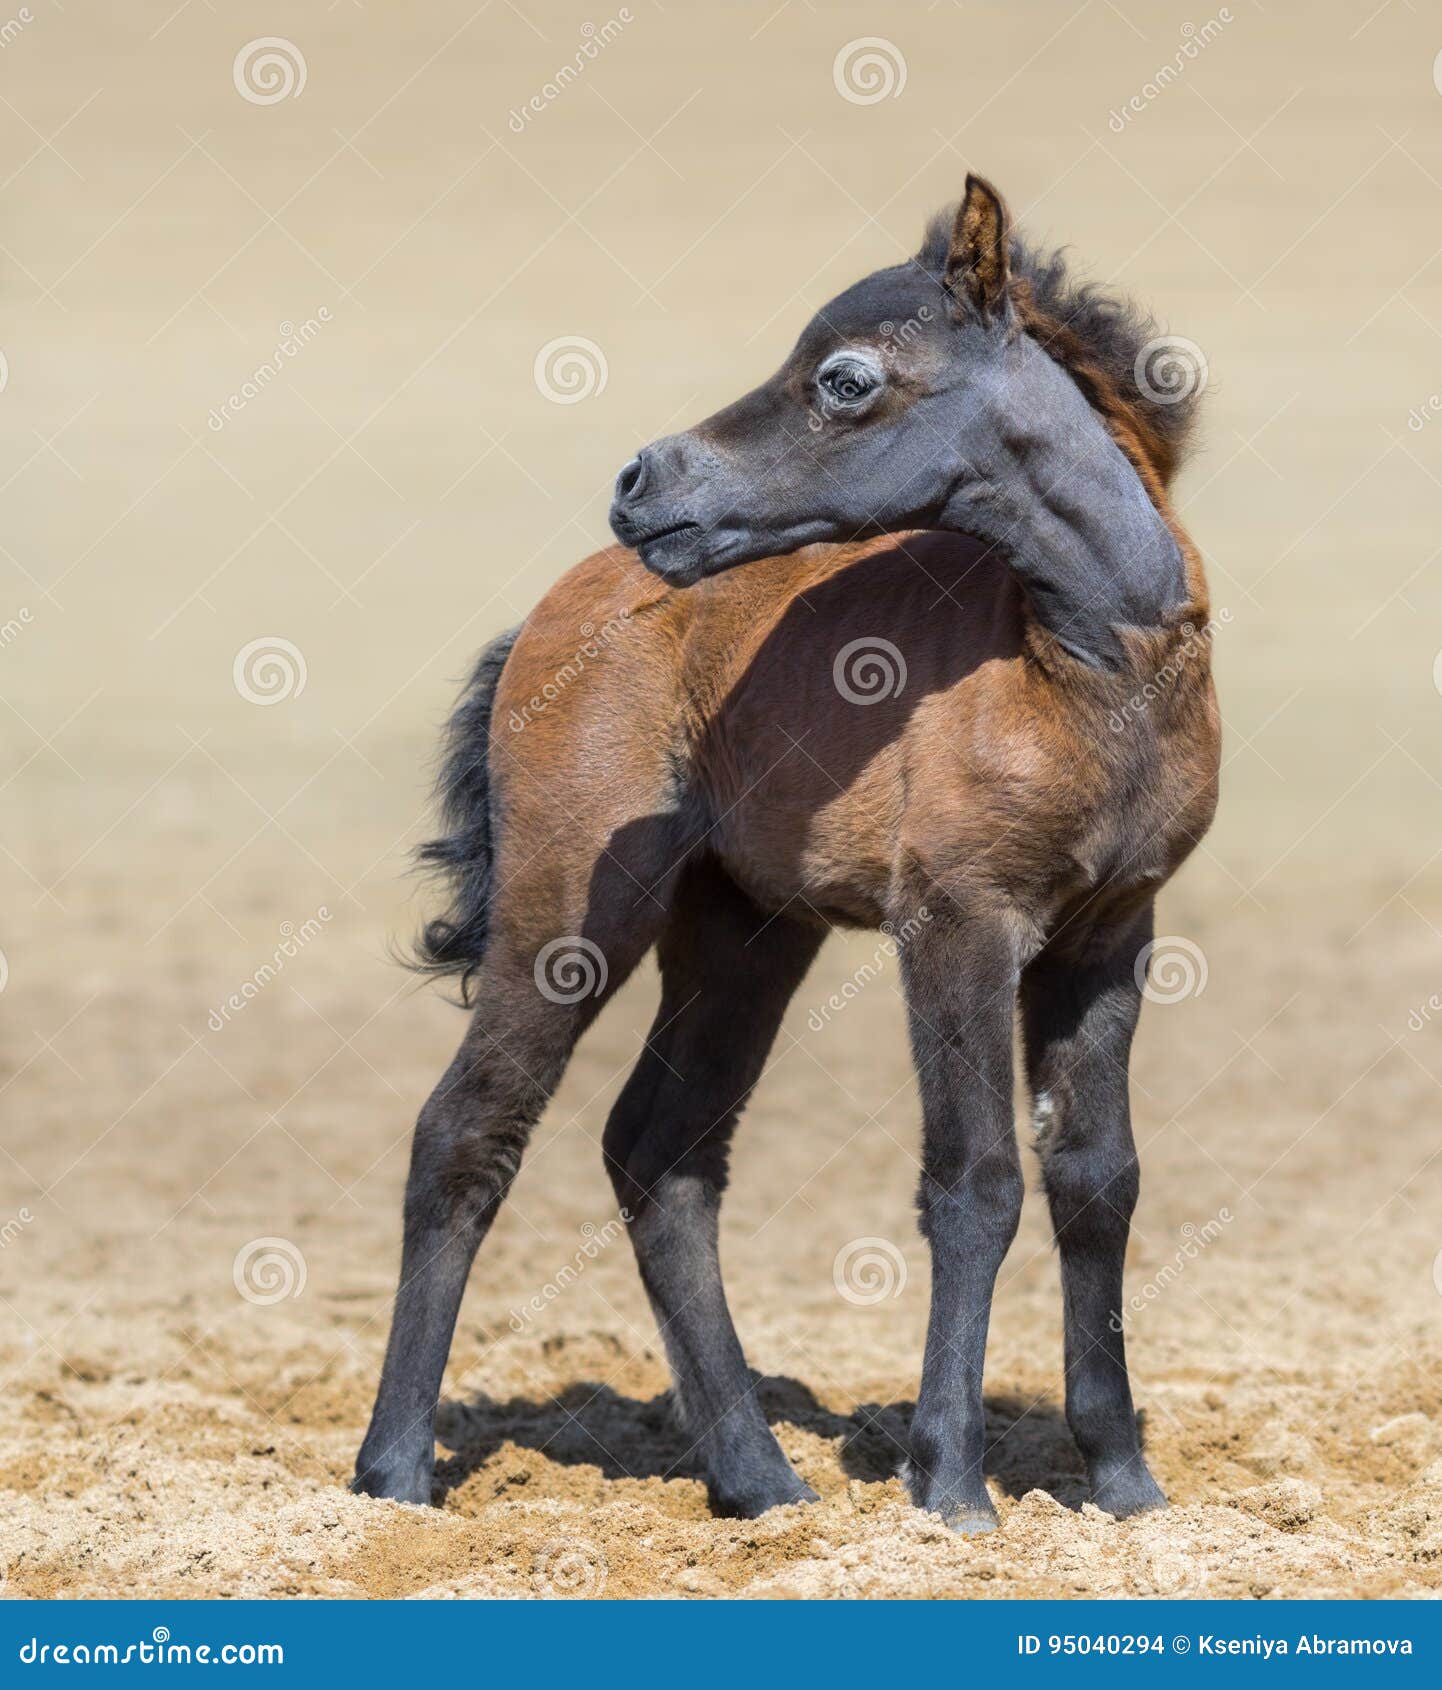 Американская миниатюрная лошадь постановка головы. Американская миниатюрная лошадь. Американская миниатюрная лошадь форма головы. American Mini Horse hospis.